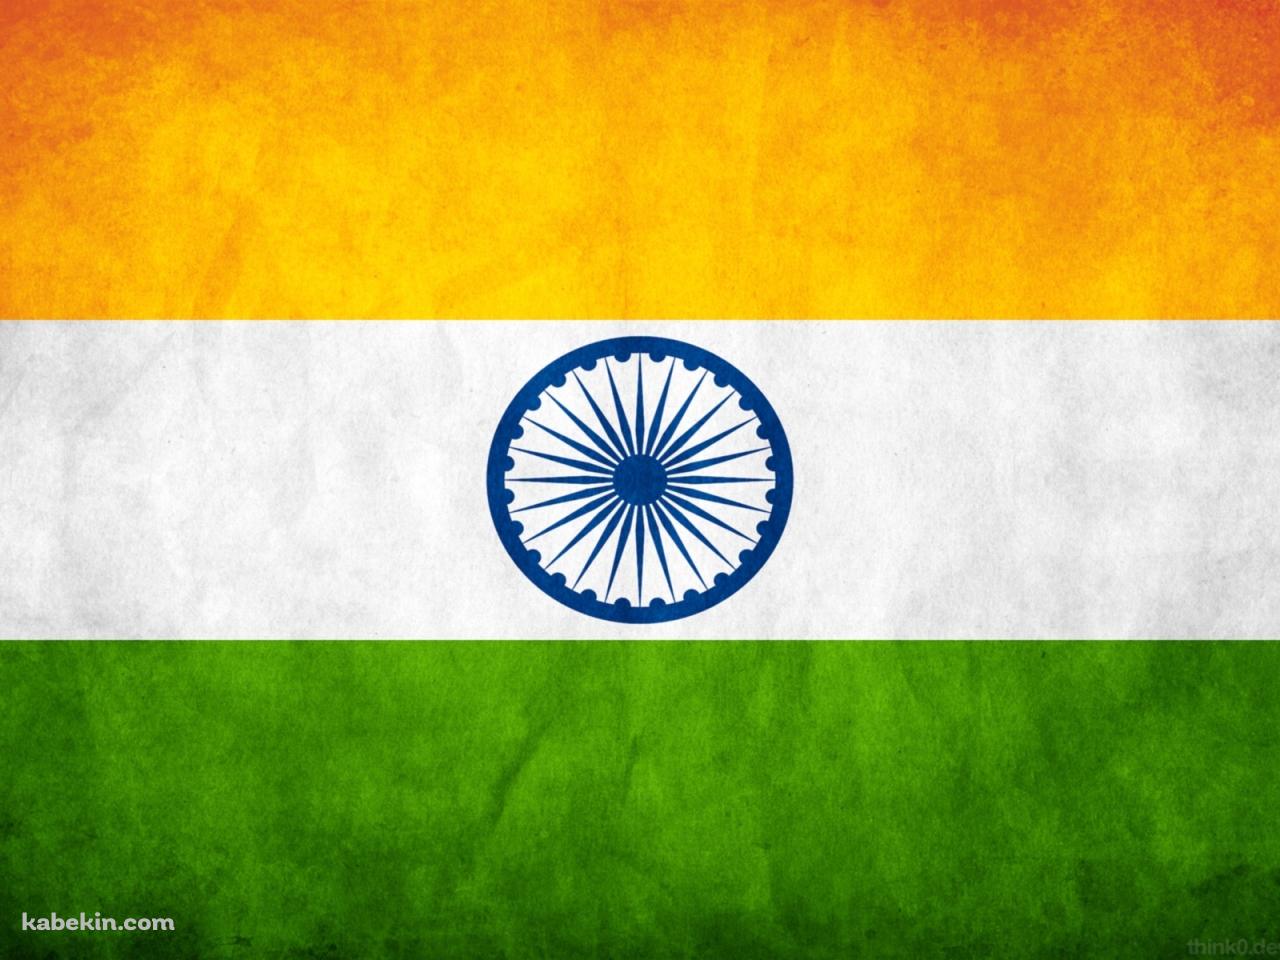 インドの国旗の壁紙(1280px x 960px) 高画質 PC・デスクトップ用